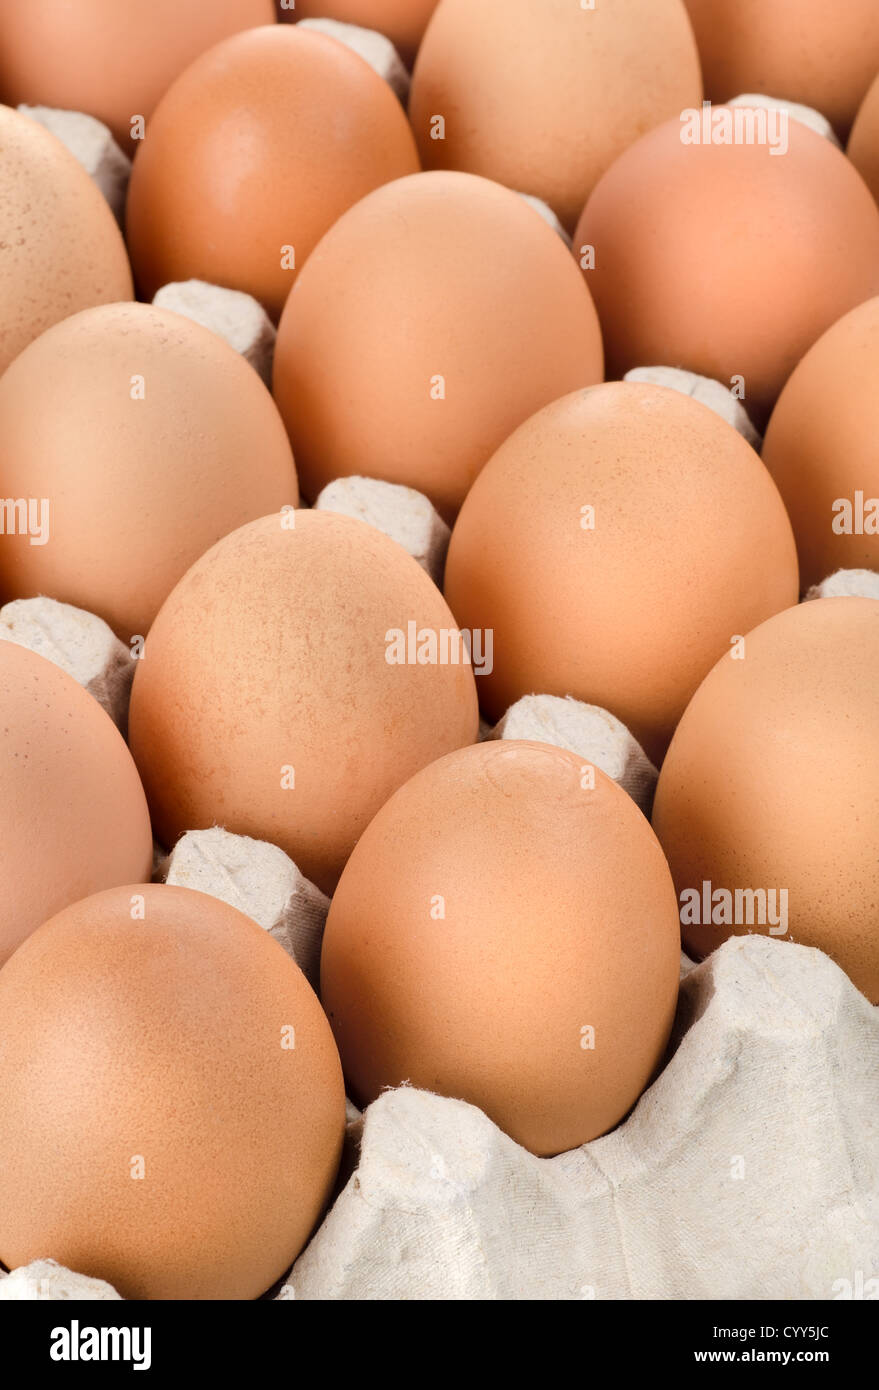 Huevos de gallina de color marrón en la bandeja de cartón Foto de stock